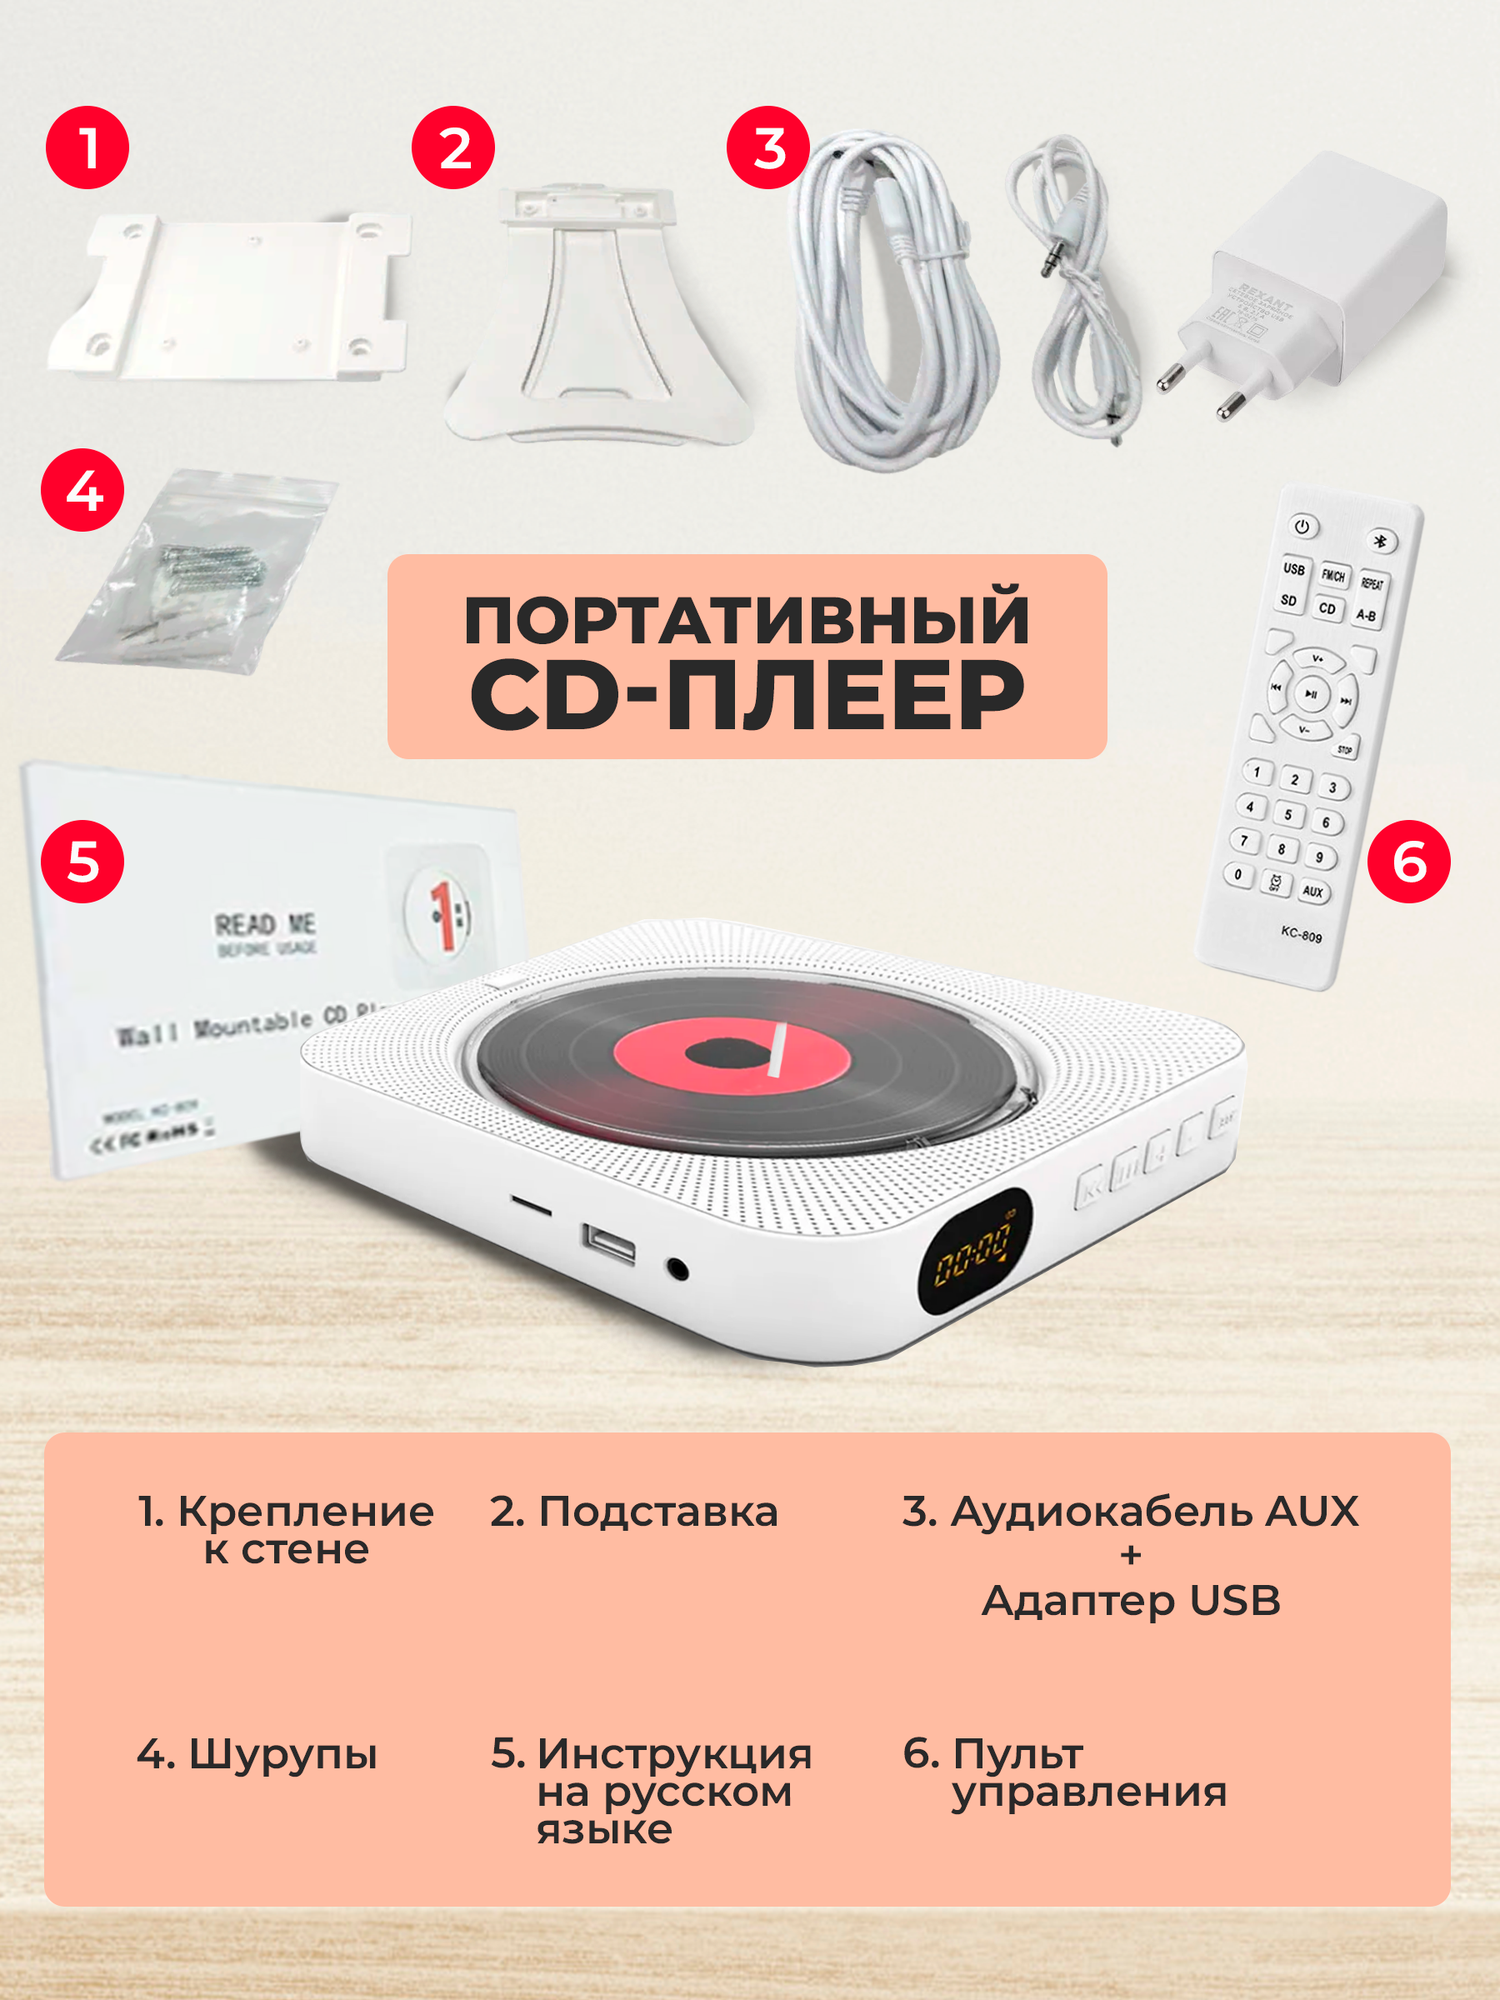 Портативный CD плеер с пультом управления Радио CD USB MP3 Bluetooth SD карта AUX